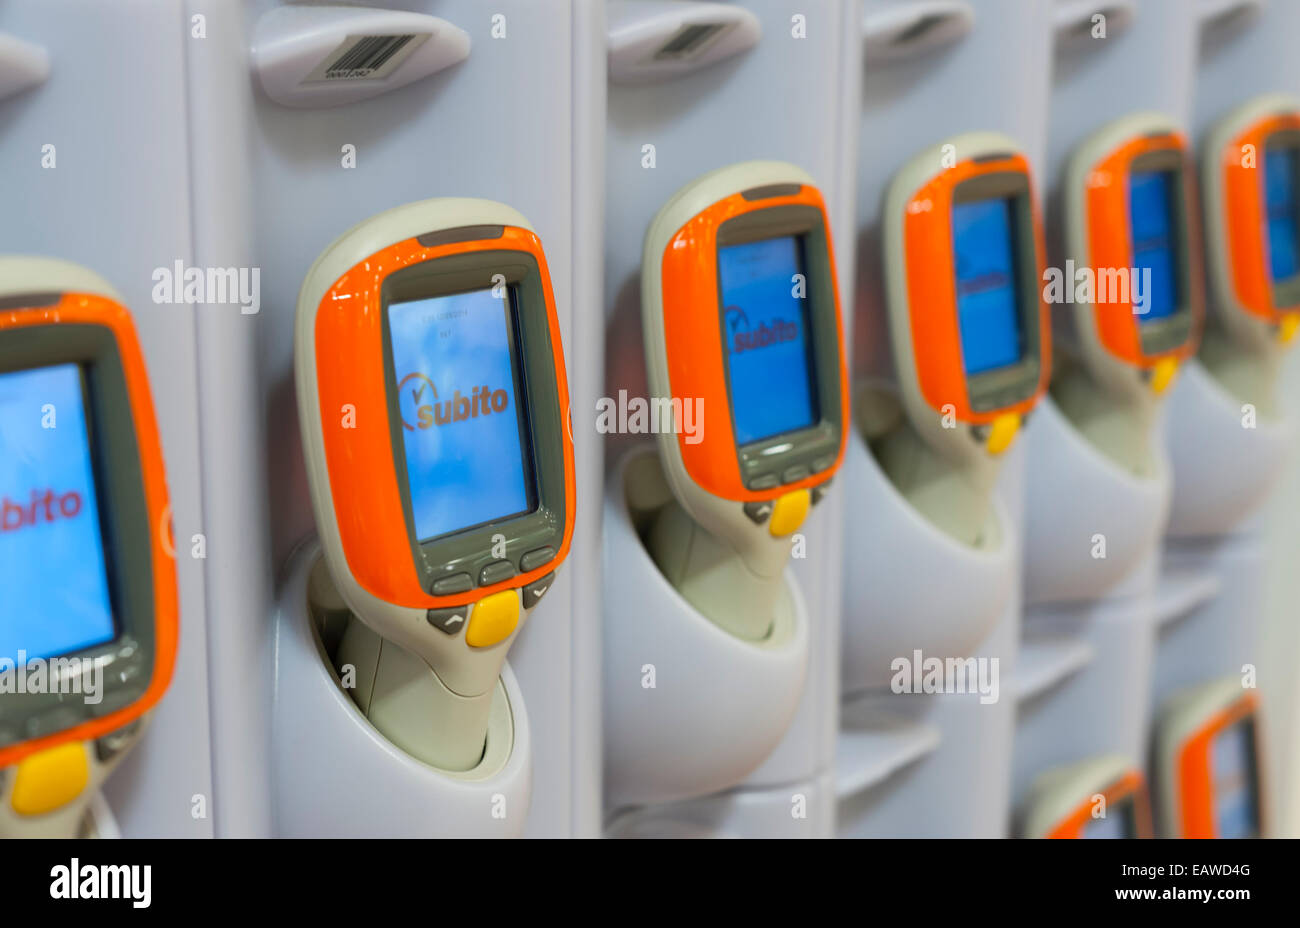 Handheld Subito Selfscanning Geräte in einem Migros-Supermarkt in Zürich,  Schweiz Stockfotografie - Alamy